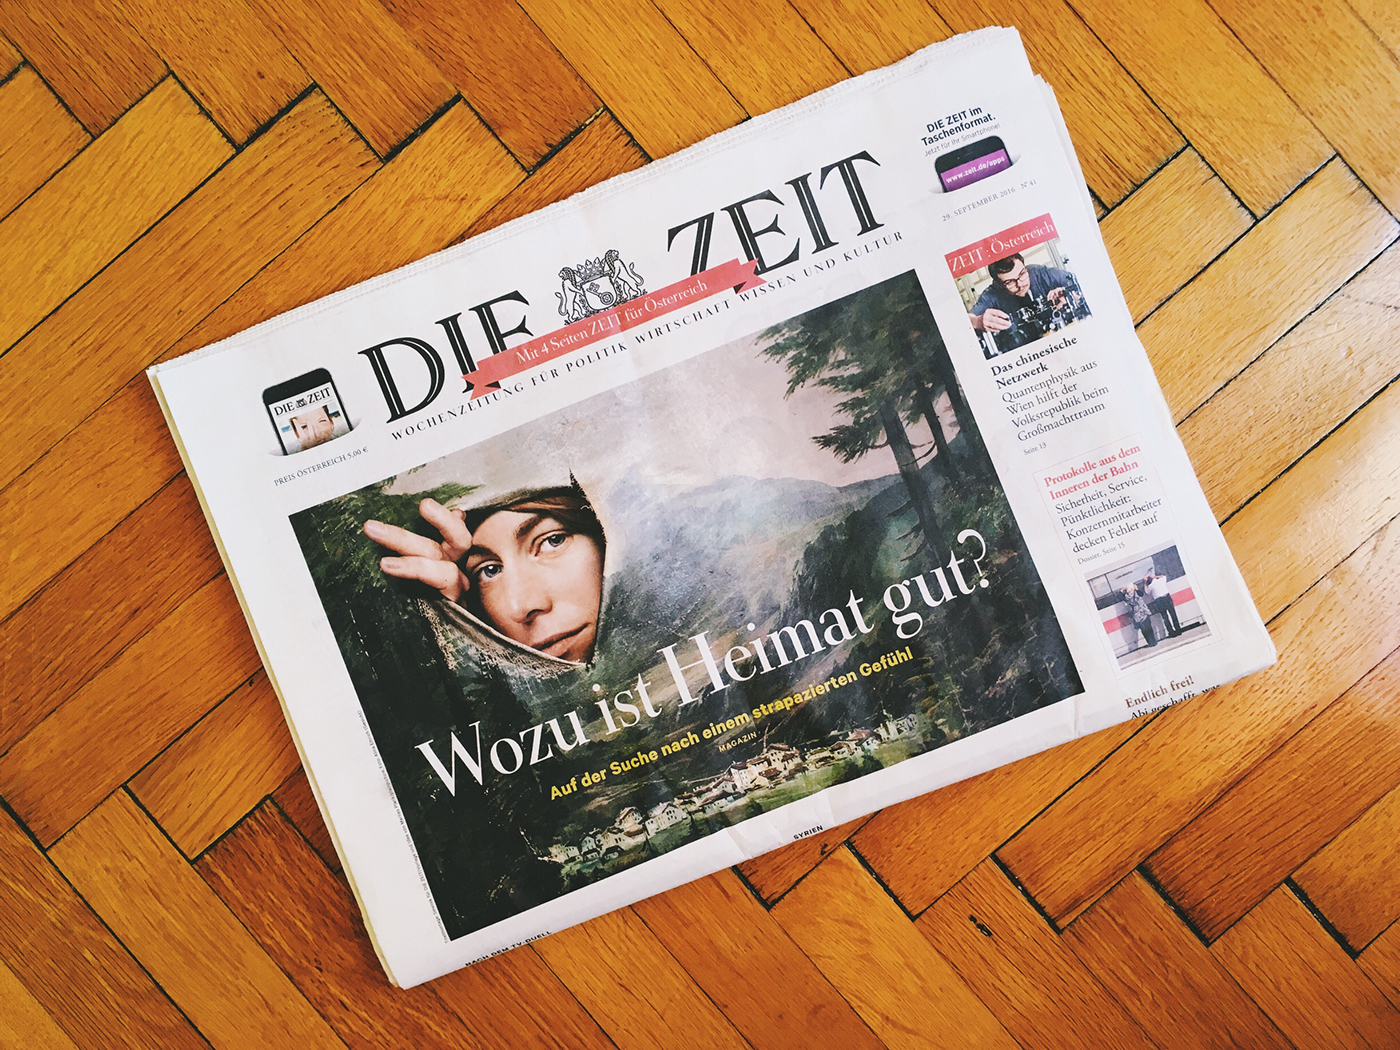 Die Zeit magazin cover artwork